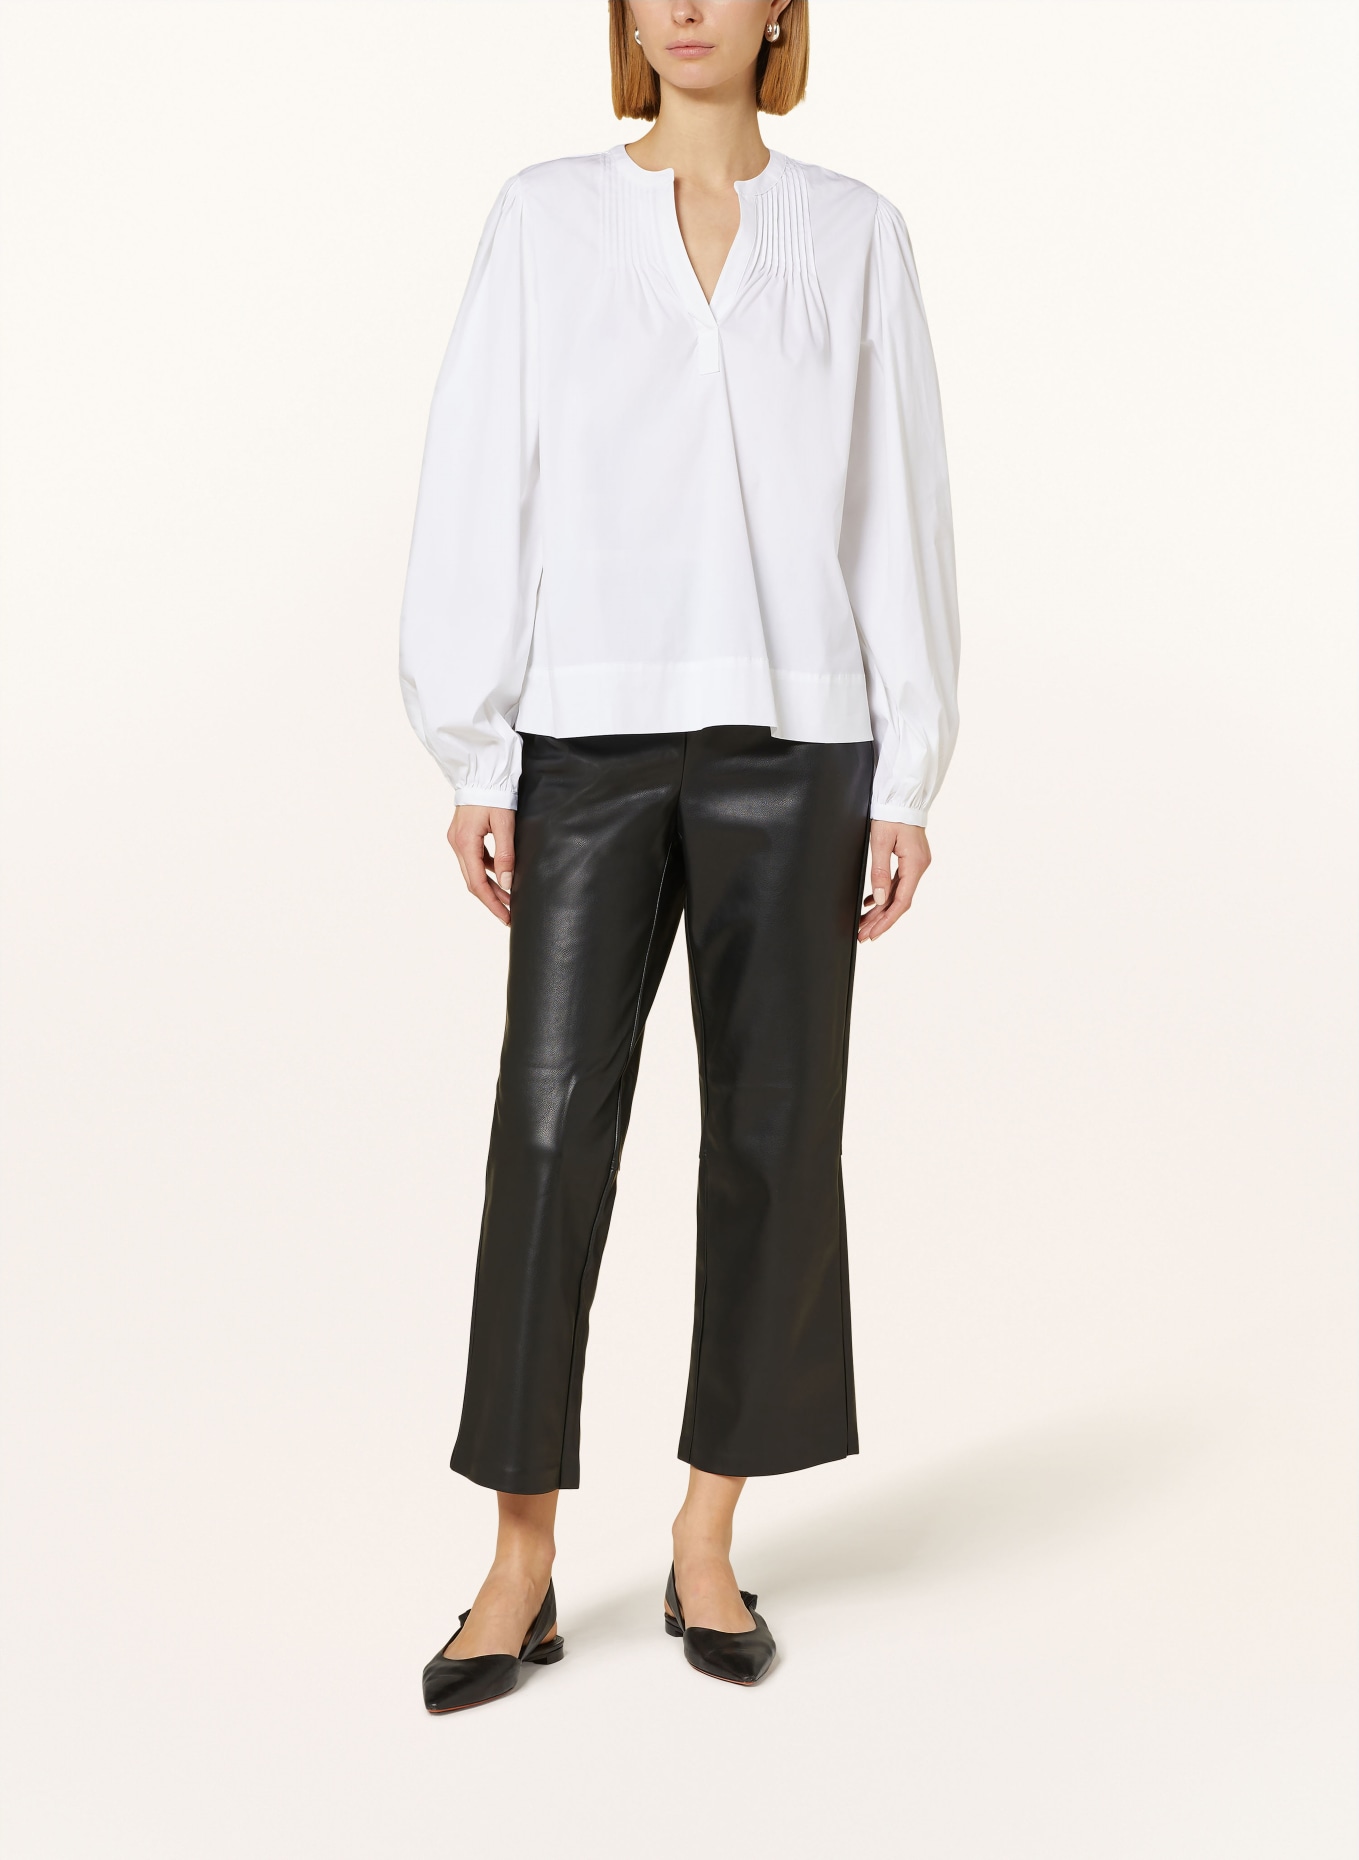 TONNO & PANNA Shirt blouse, Color: WHITE (Image 2)